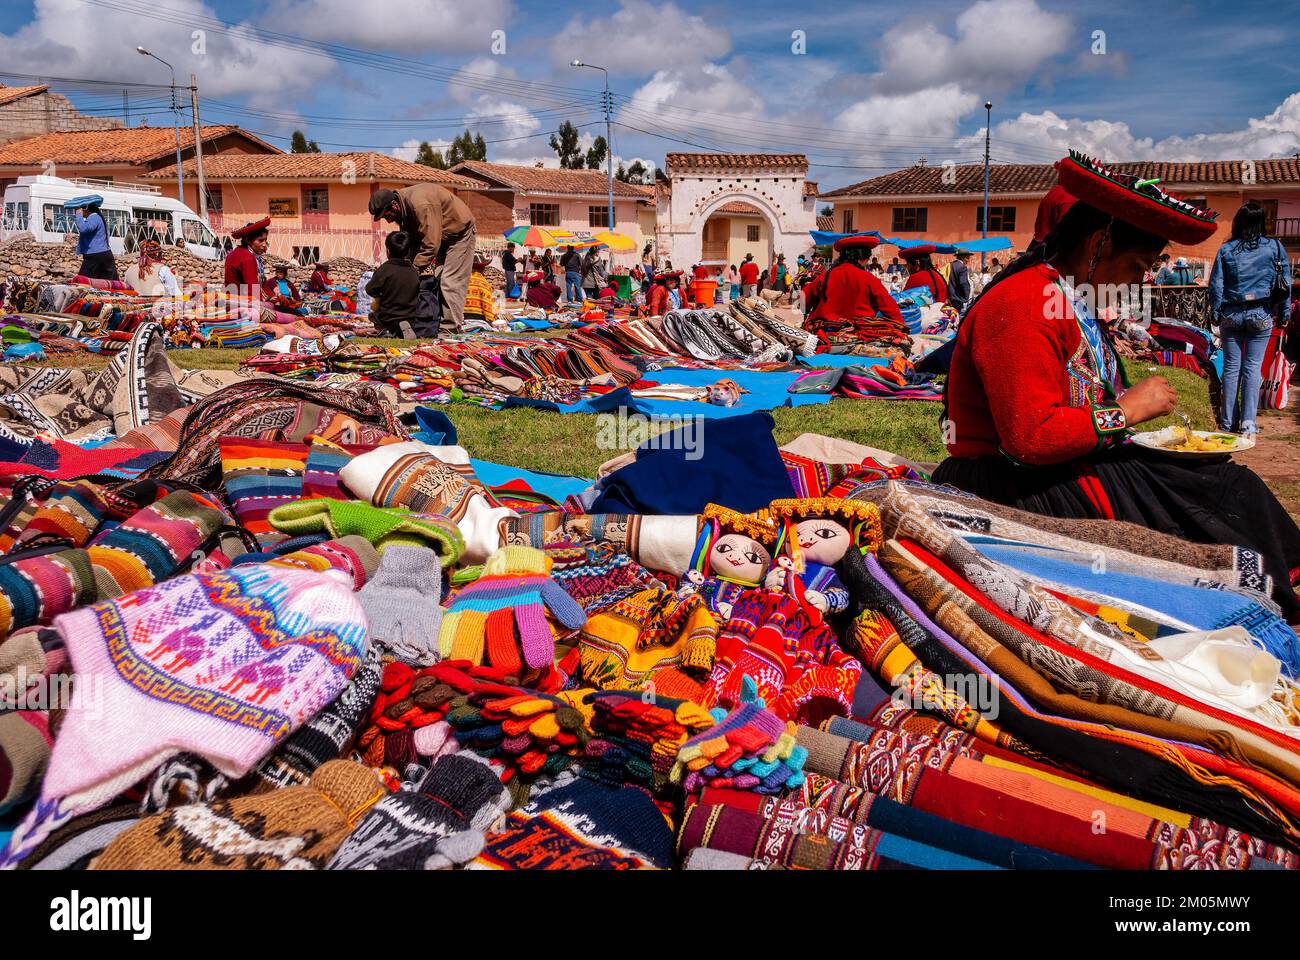 Traditional street market at Chinchero, Urubamba, Peru Stock Photo